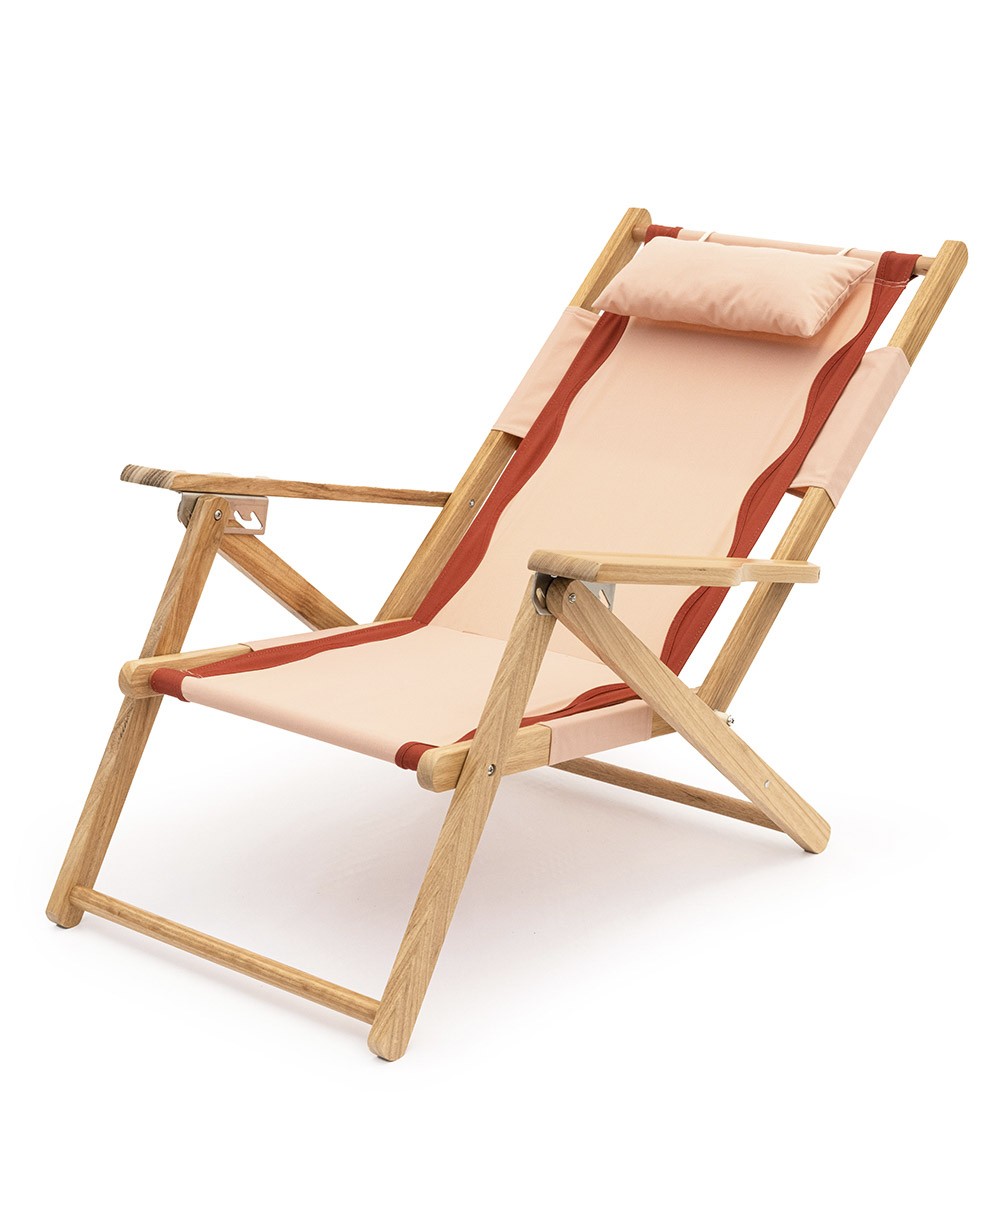 Hier abgebildet ist der The Tommy Chair in Rivie Pink von Business & Pleasure Co. – im RAUM concept store